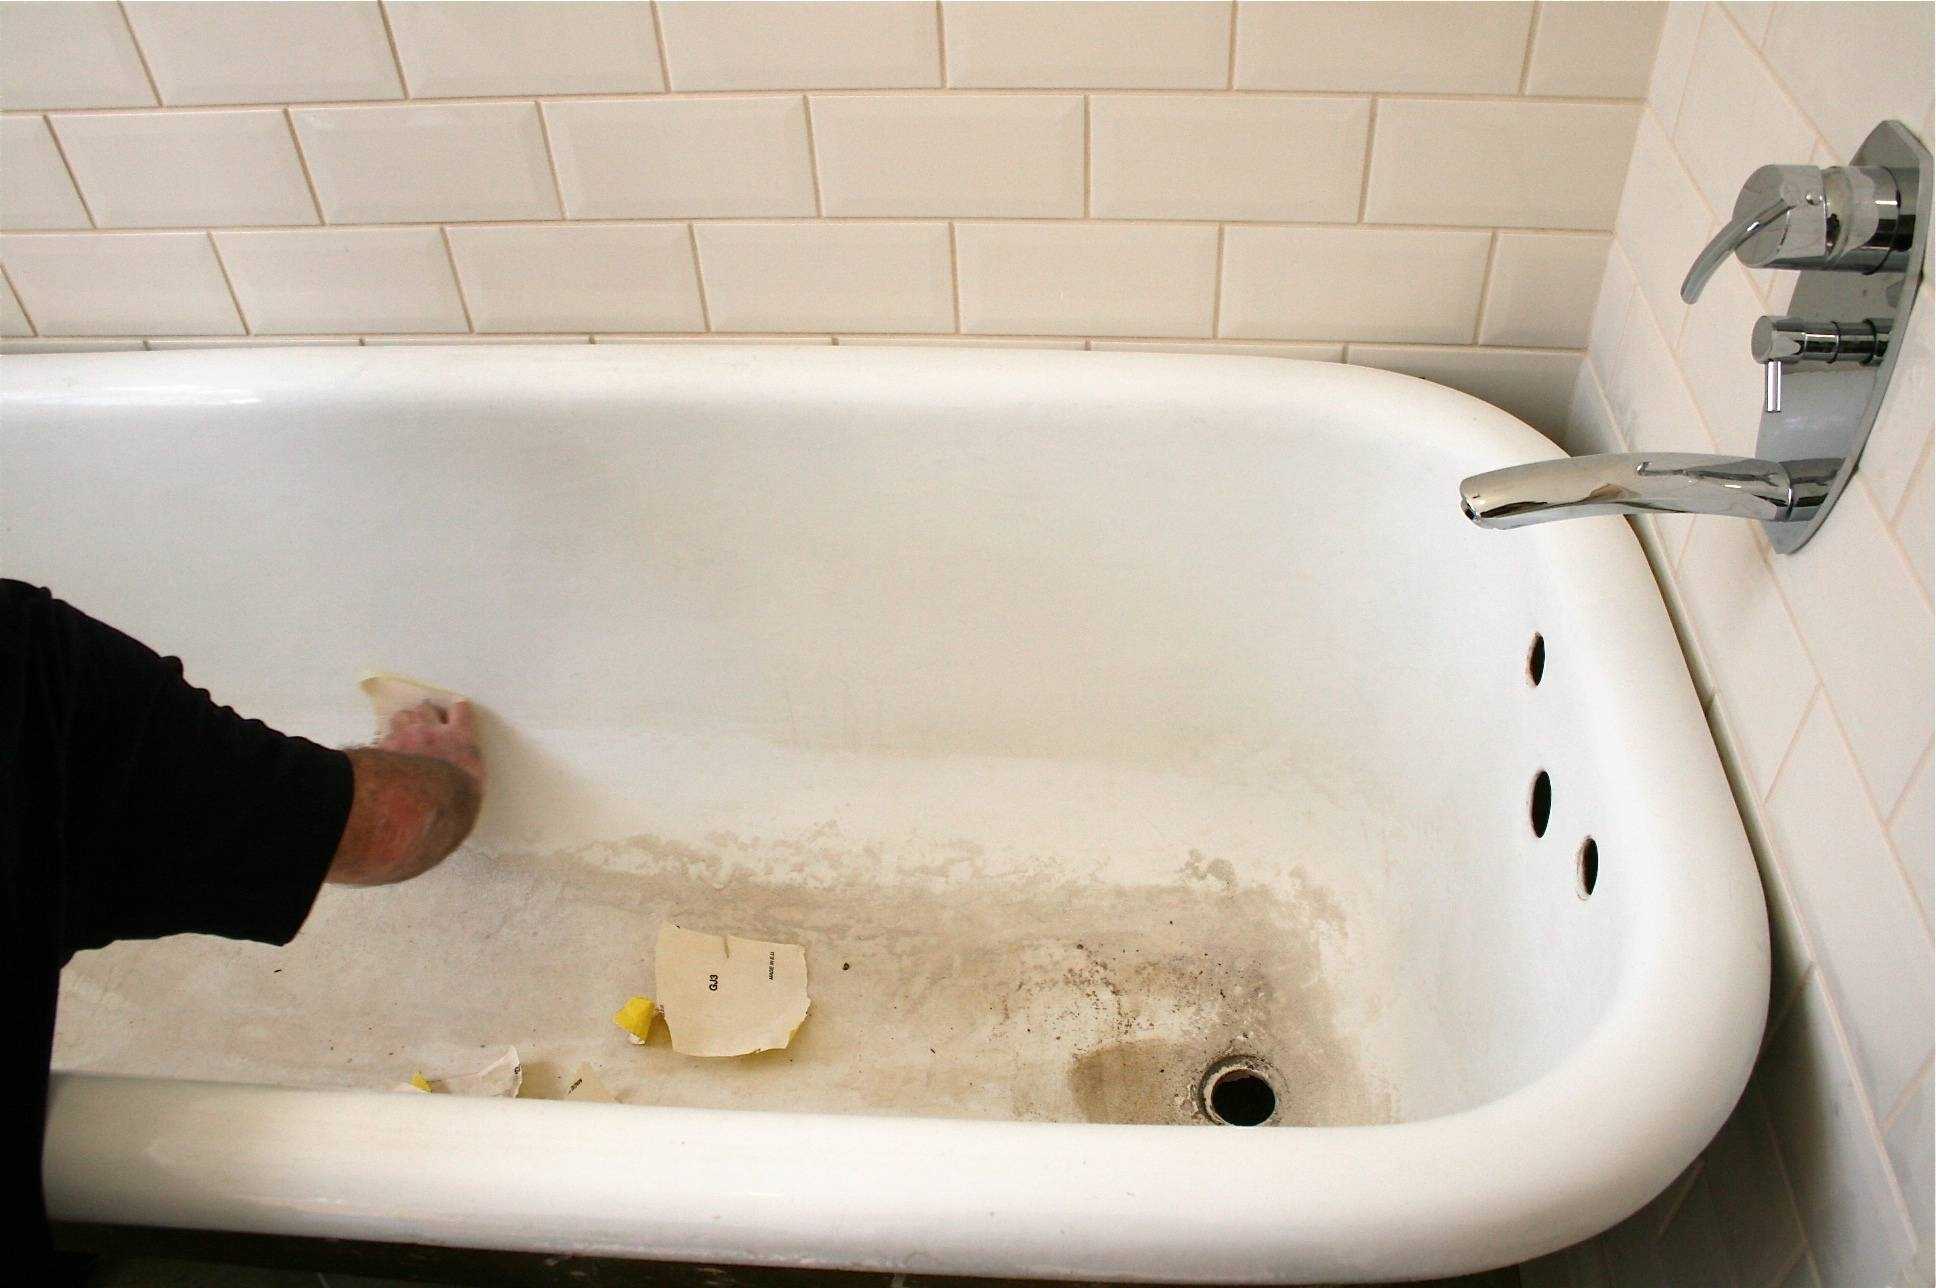 Все о том как выполнить ремонт чугунной ванны своими руками Царапины сколы и другие распространенные виды повреждений Доступные способы их устранения в домашних условиях и реккомендации по проведению реставрации чугунной ванны